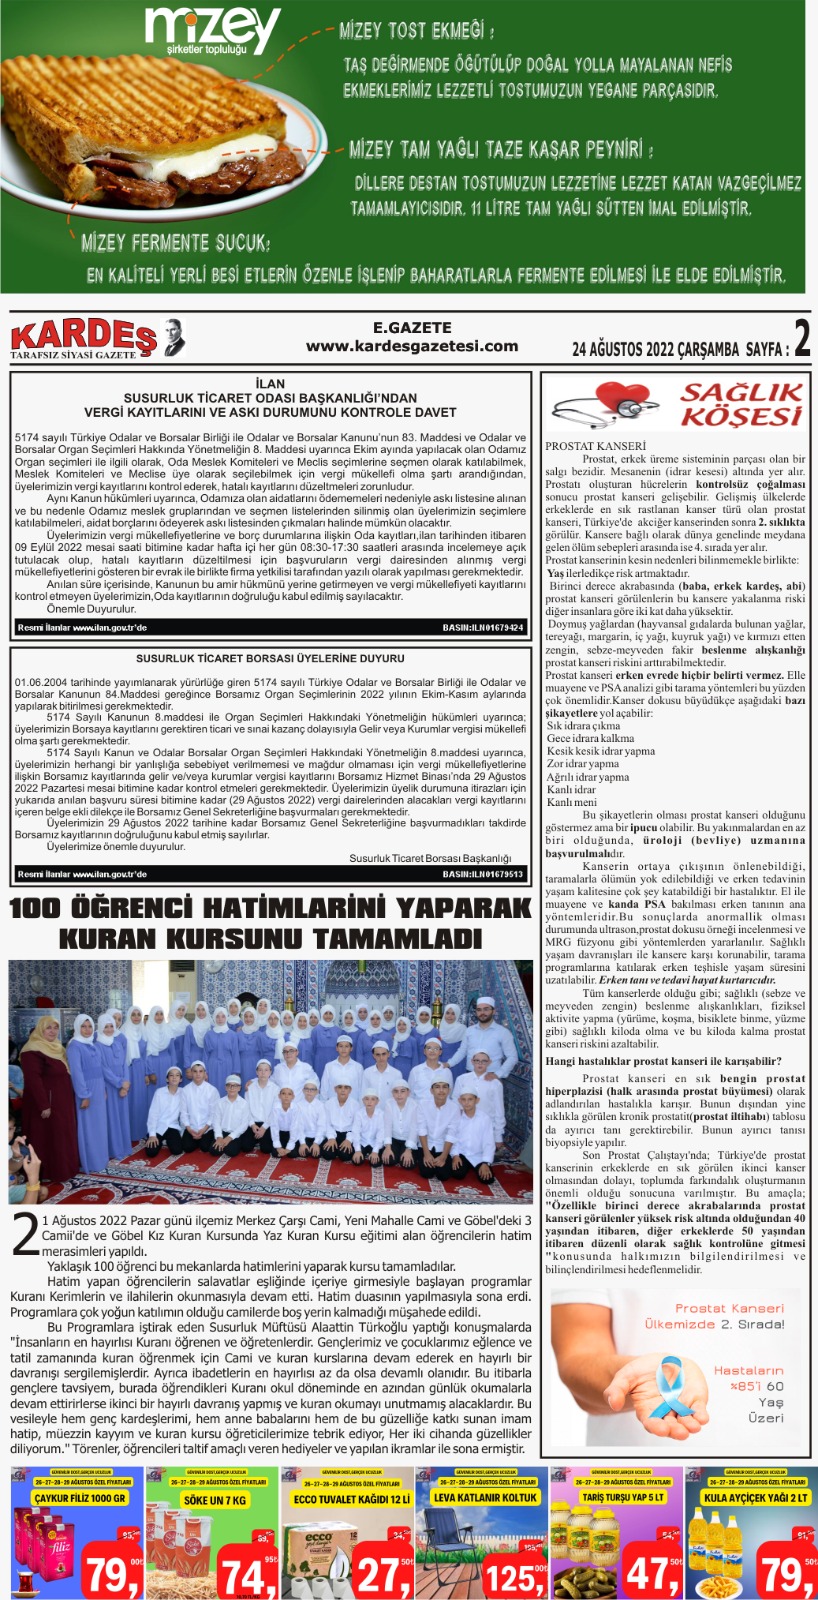 24.08.2022 Tarihli Kardeş Gazetesi Sayfa 2